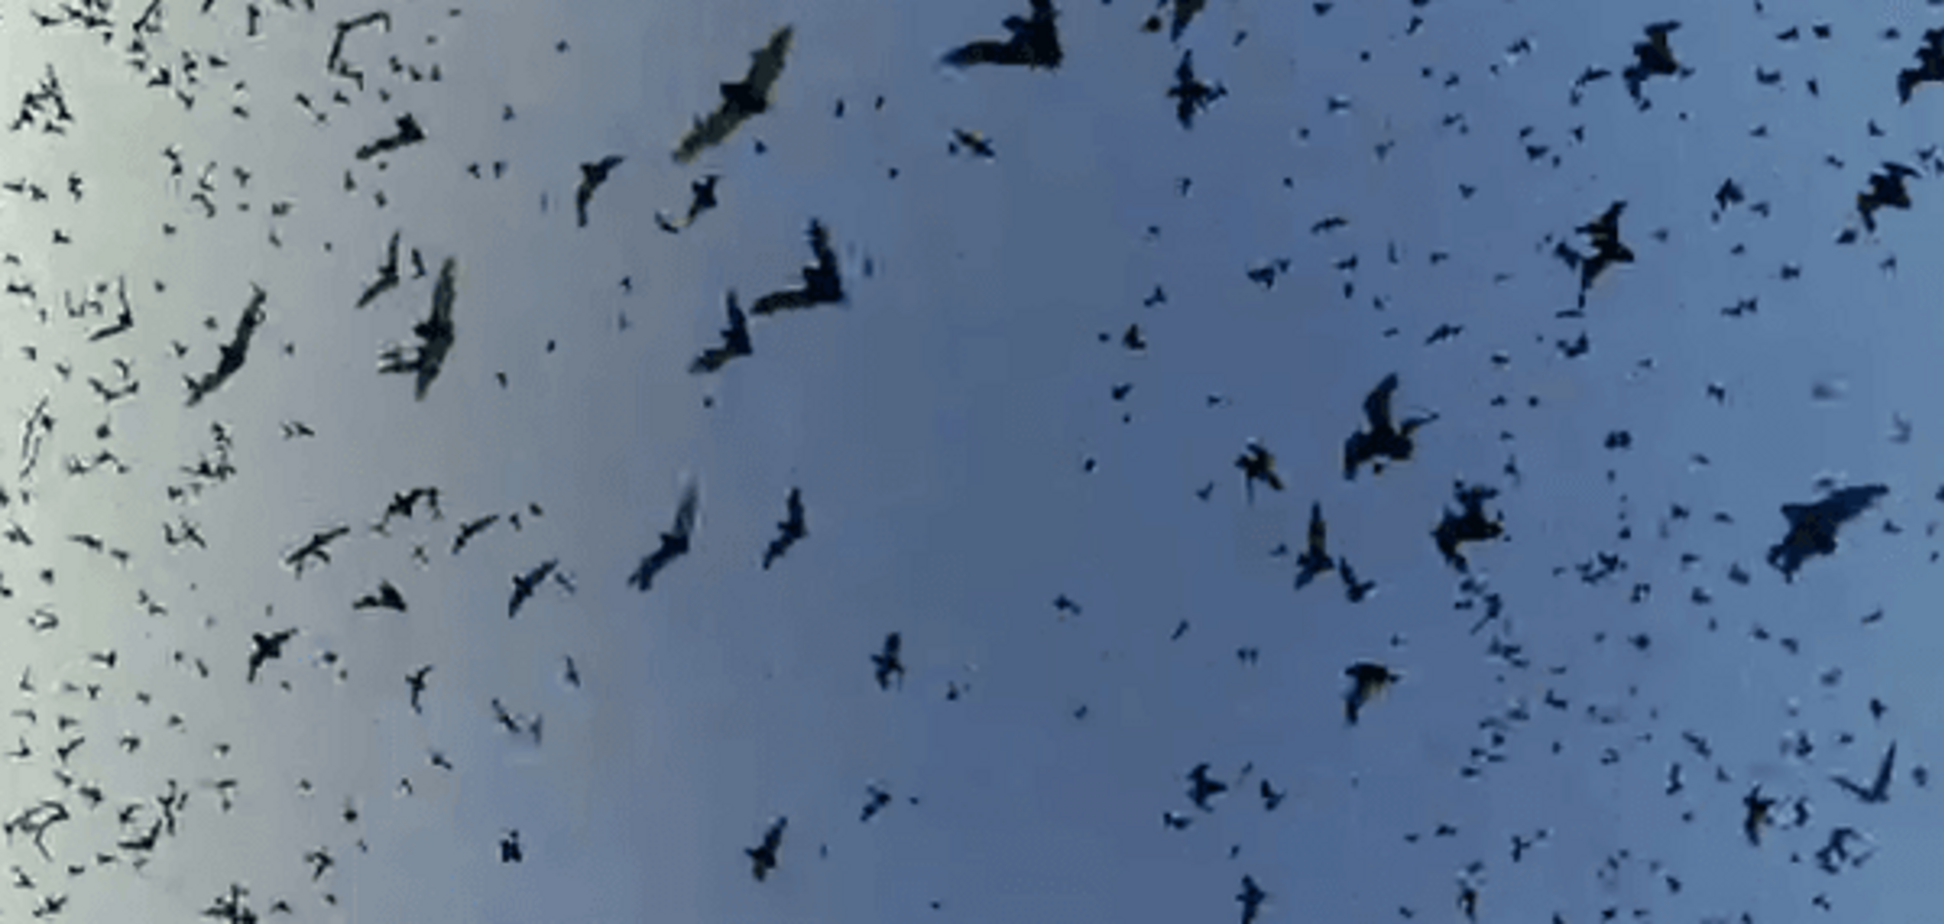 Двух туристов в США накрыло 'торнадо' из летучих мышей: видеофакт